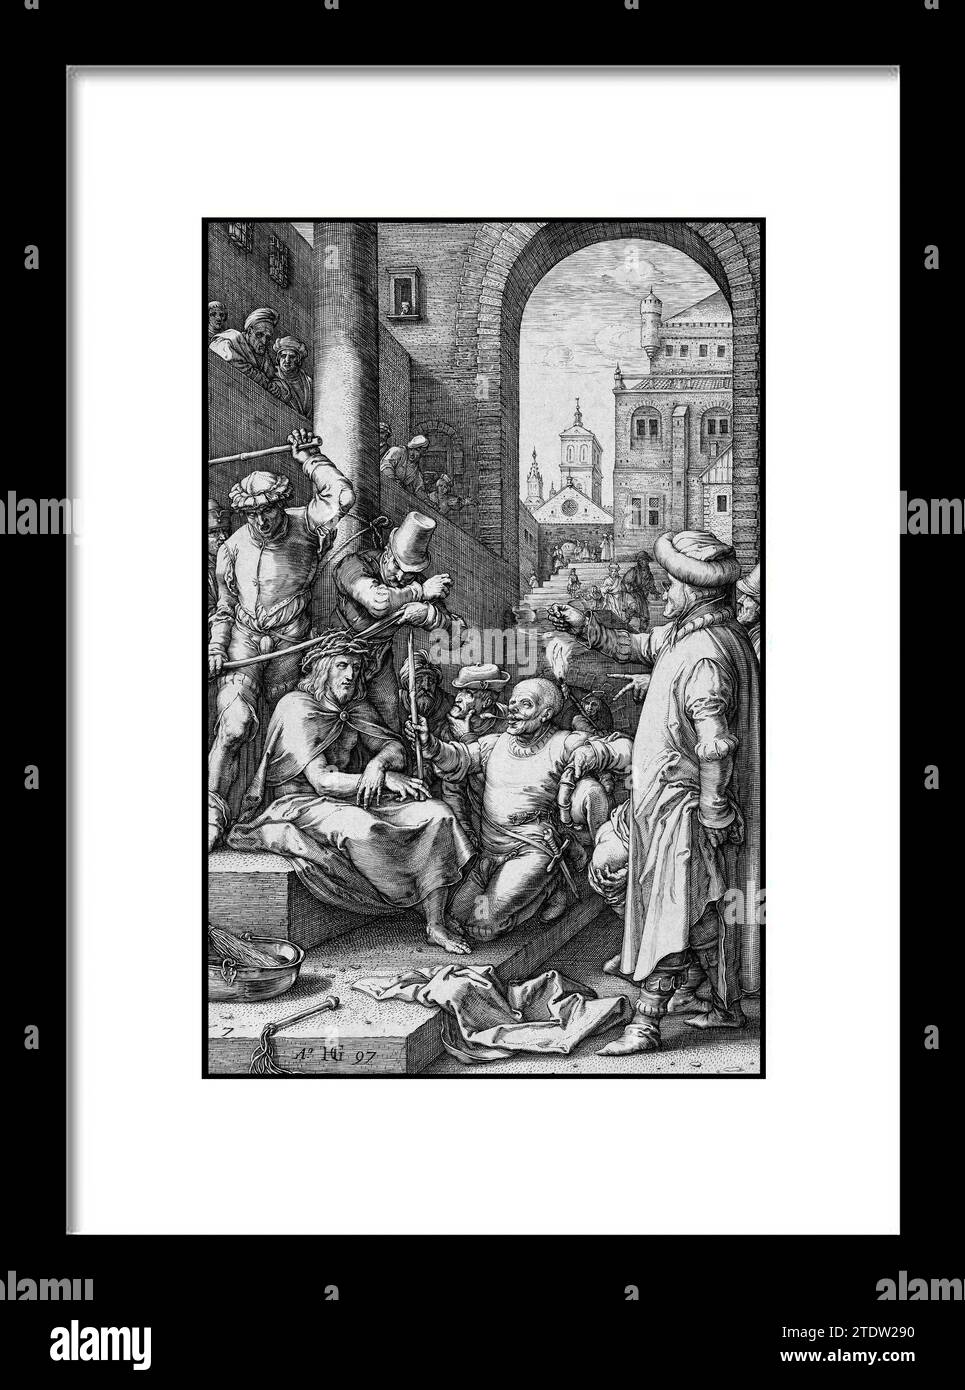 Die Krönung mit Dornen, aus der Passion Christi Hendrick Goltzius (Niederländisch, Mьhlbracht 1558-1617 Haarlem)Datum: 1597. Gravur. Blatt: 8 1/ Stockfoto